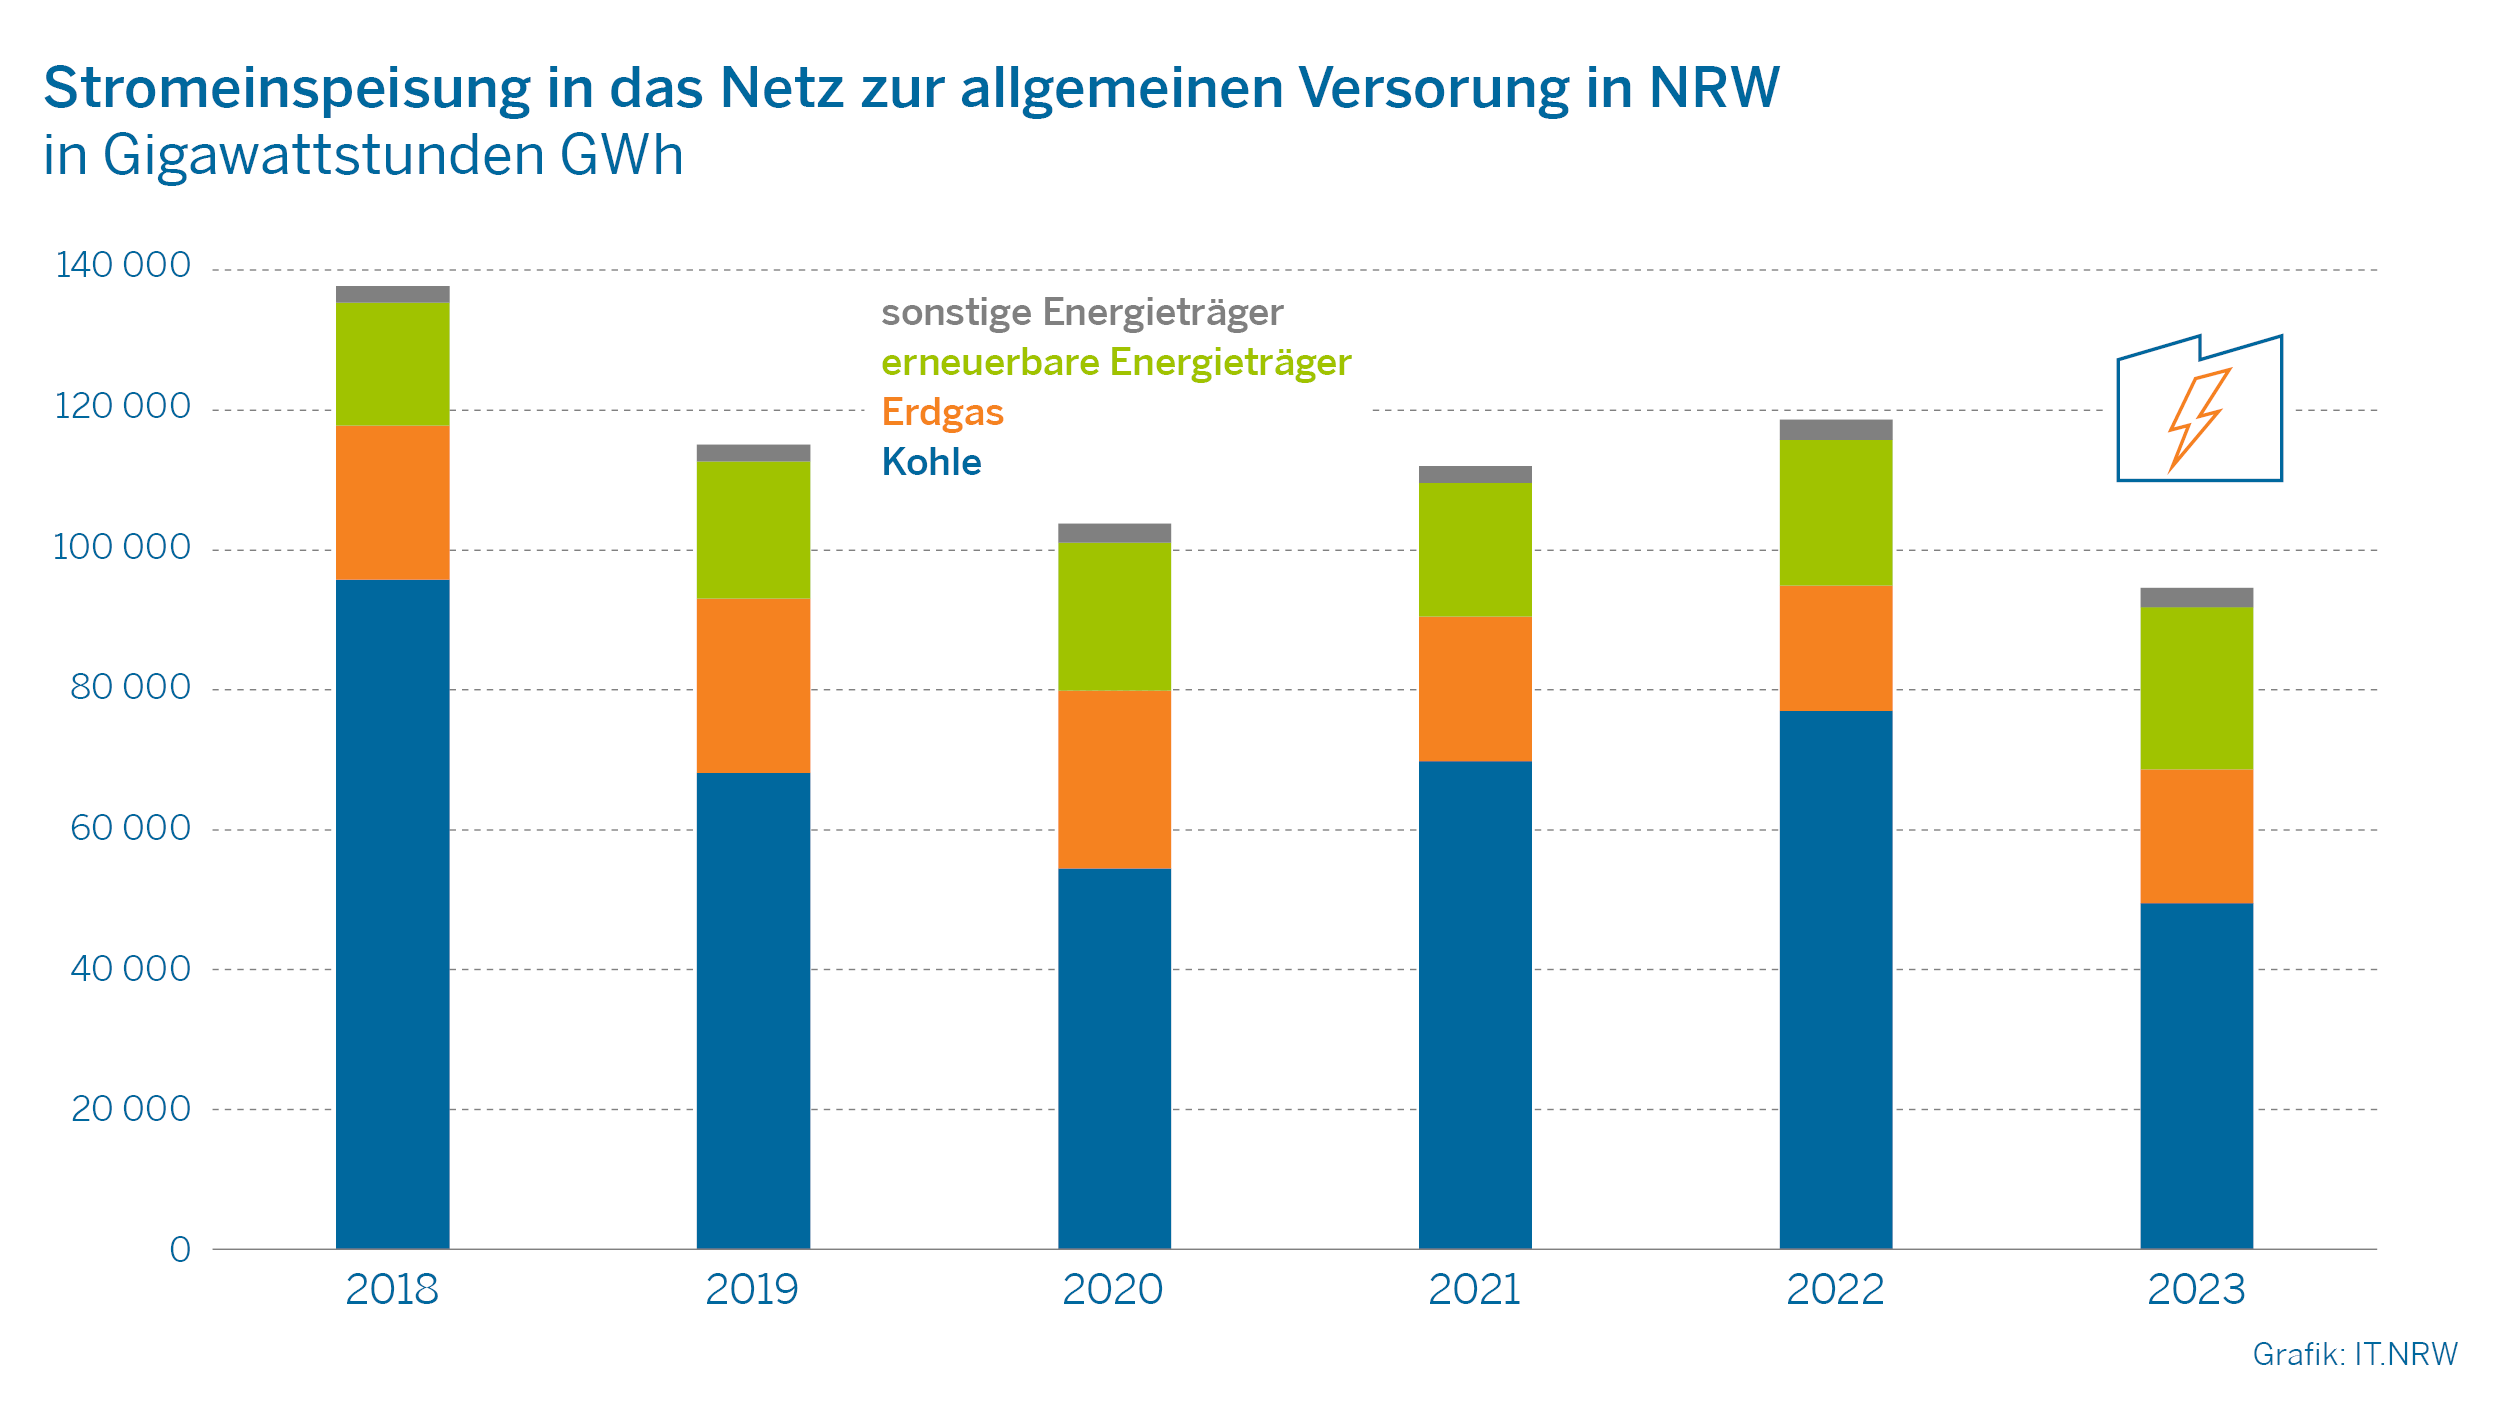 Stromeinspeisung in das Netz zur allgemeinen Versorgung in NRW